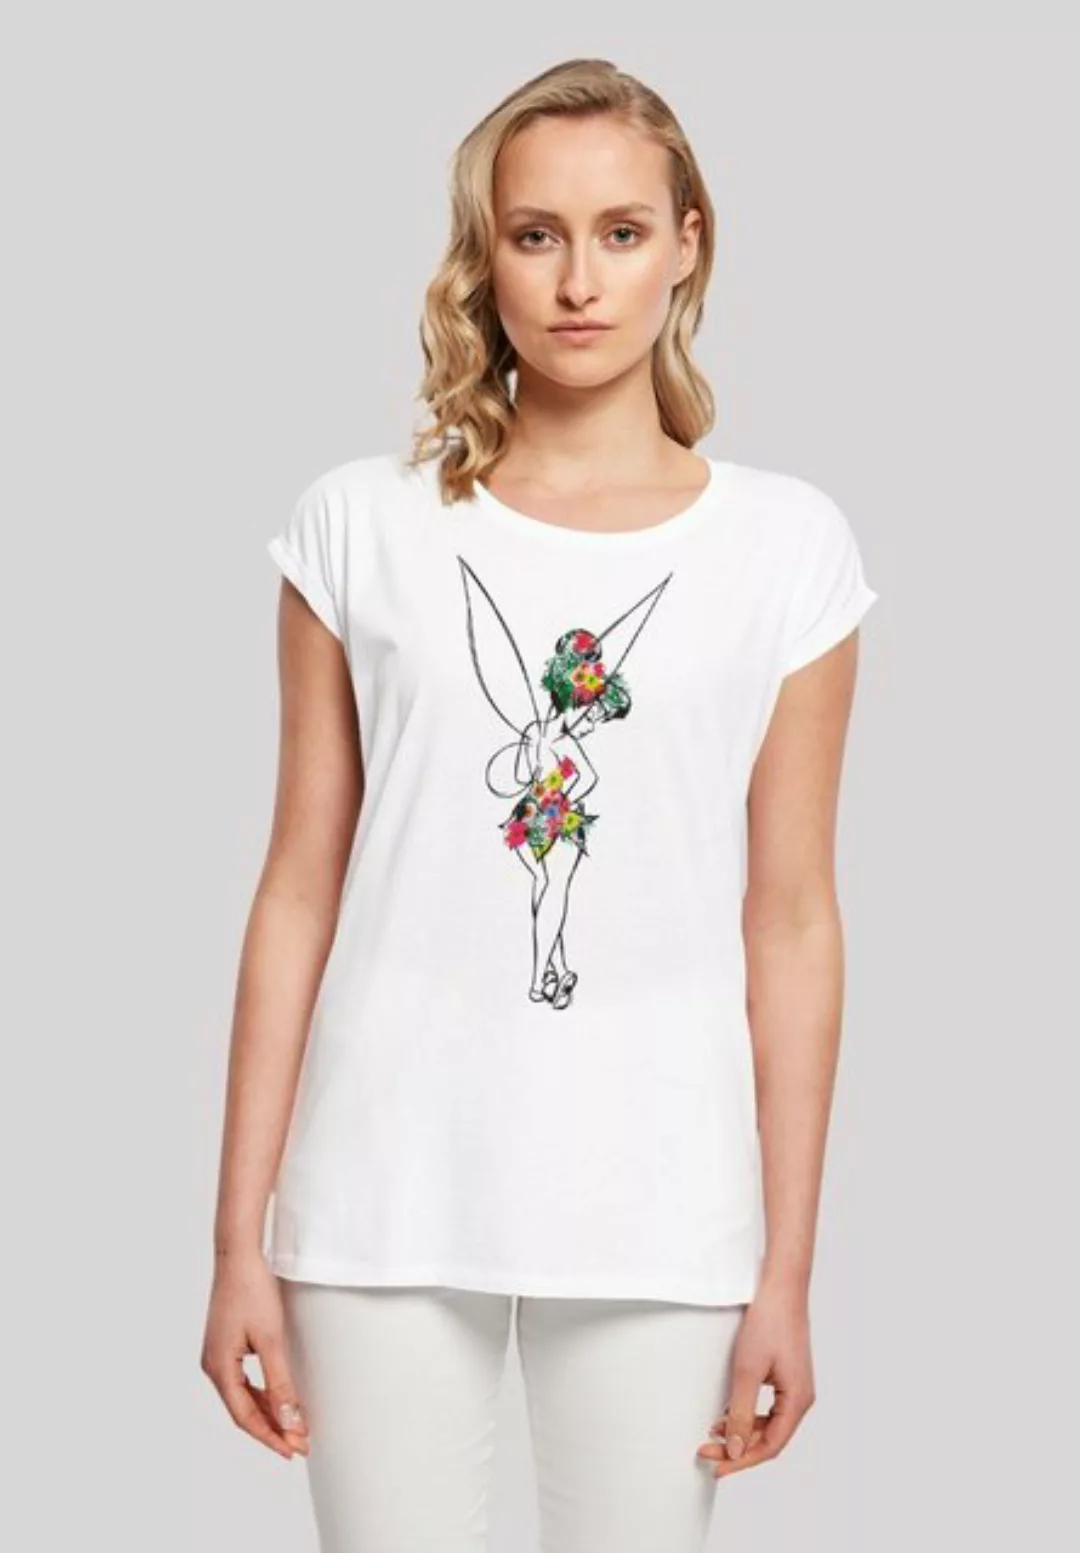 F4NT4STIC T-Shirt Disney Peter Pan Flower Power Premium Qualität günstig online kaufen